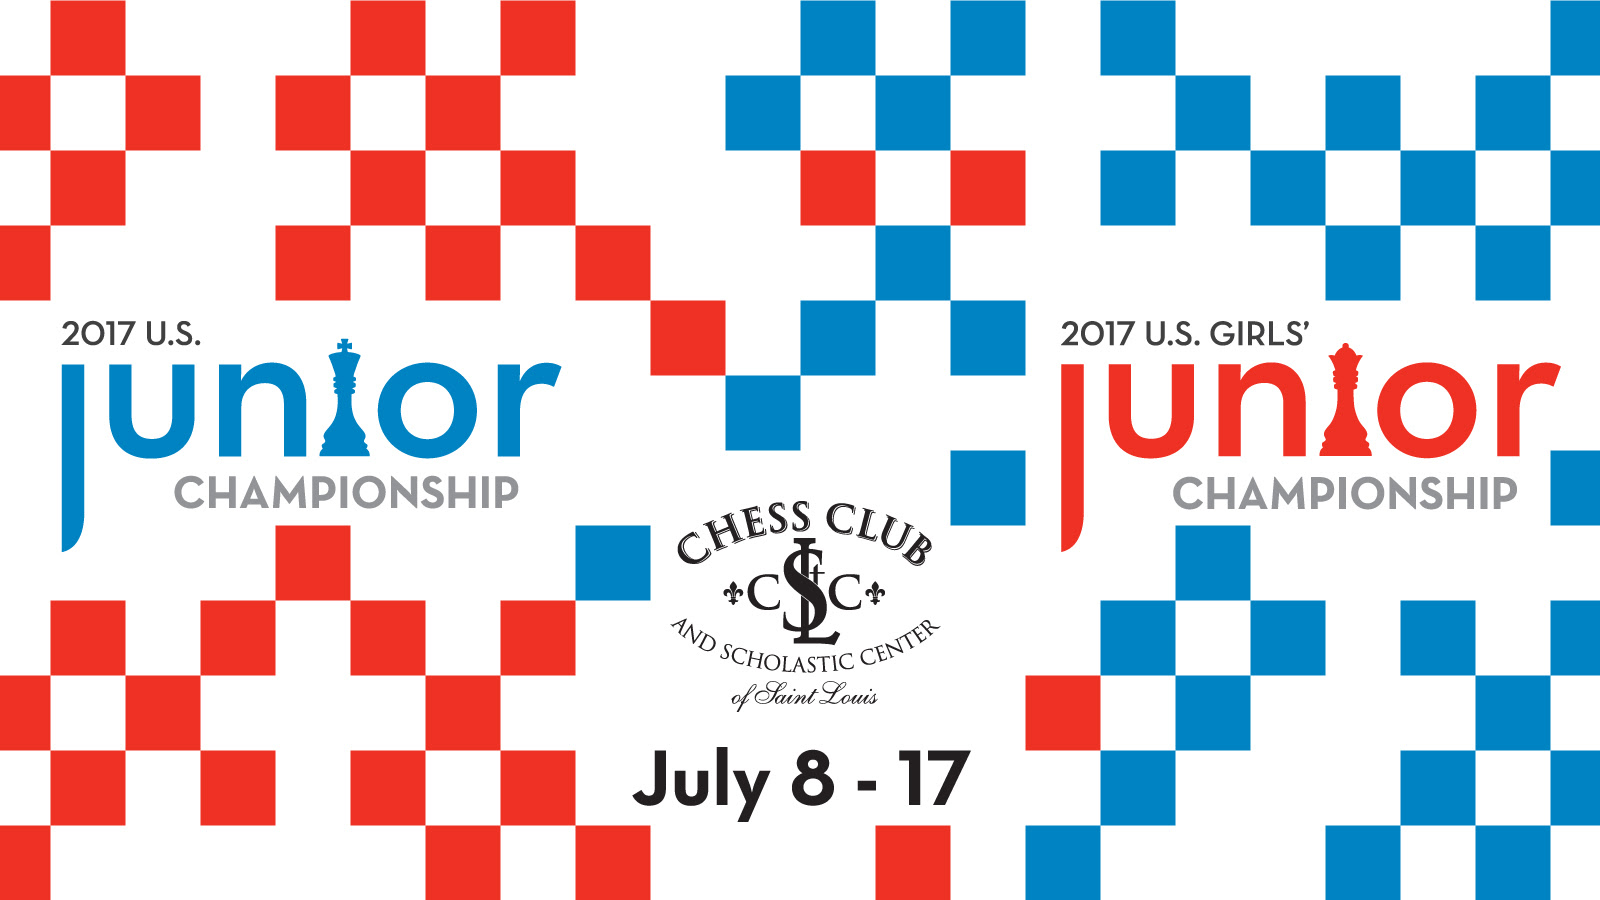 2017 U.S. Junior and Junior Girls' Championships